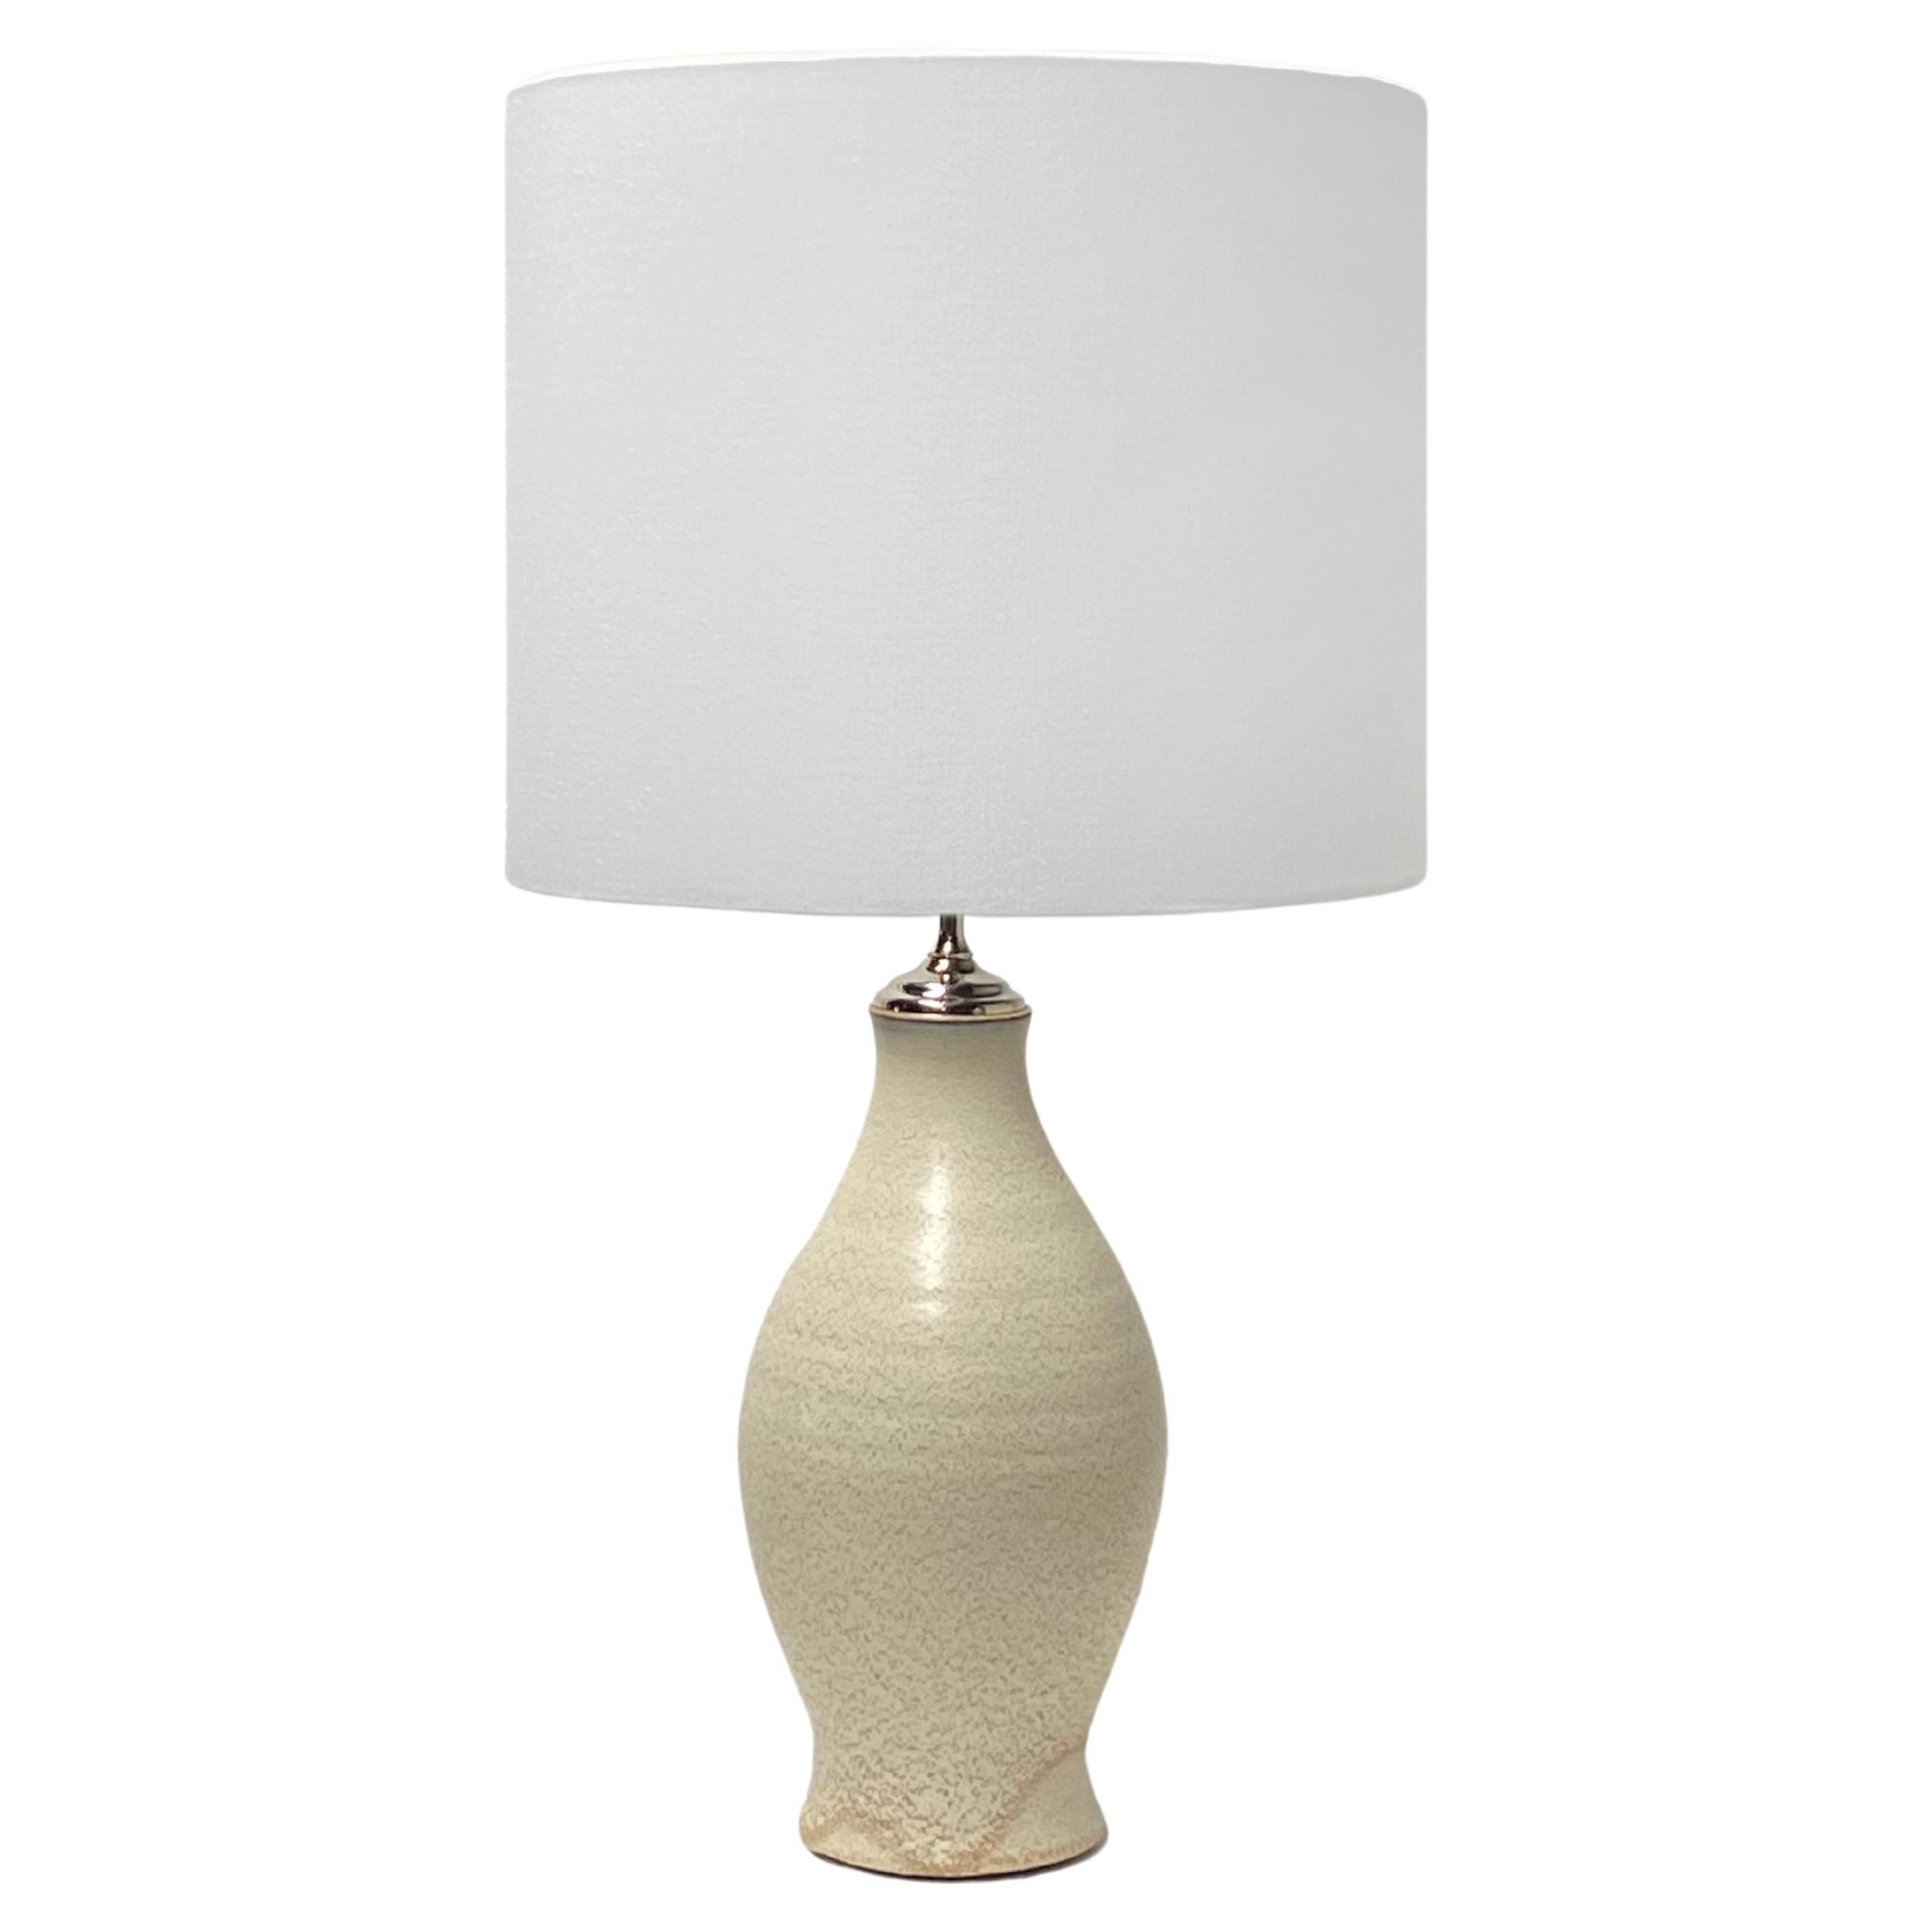 Handgefertigte große, hohe, wheelgedrehte Lampe von Olivia Barry / By Hand - 18" hoch im Angebot